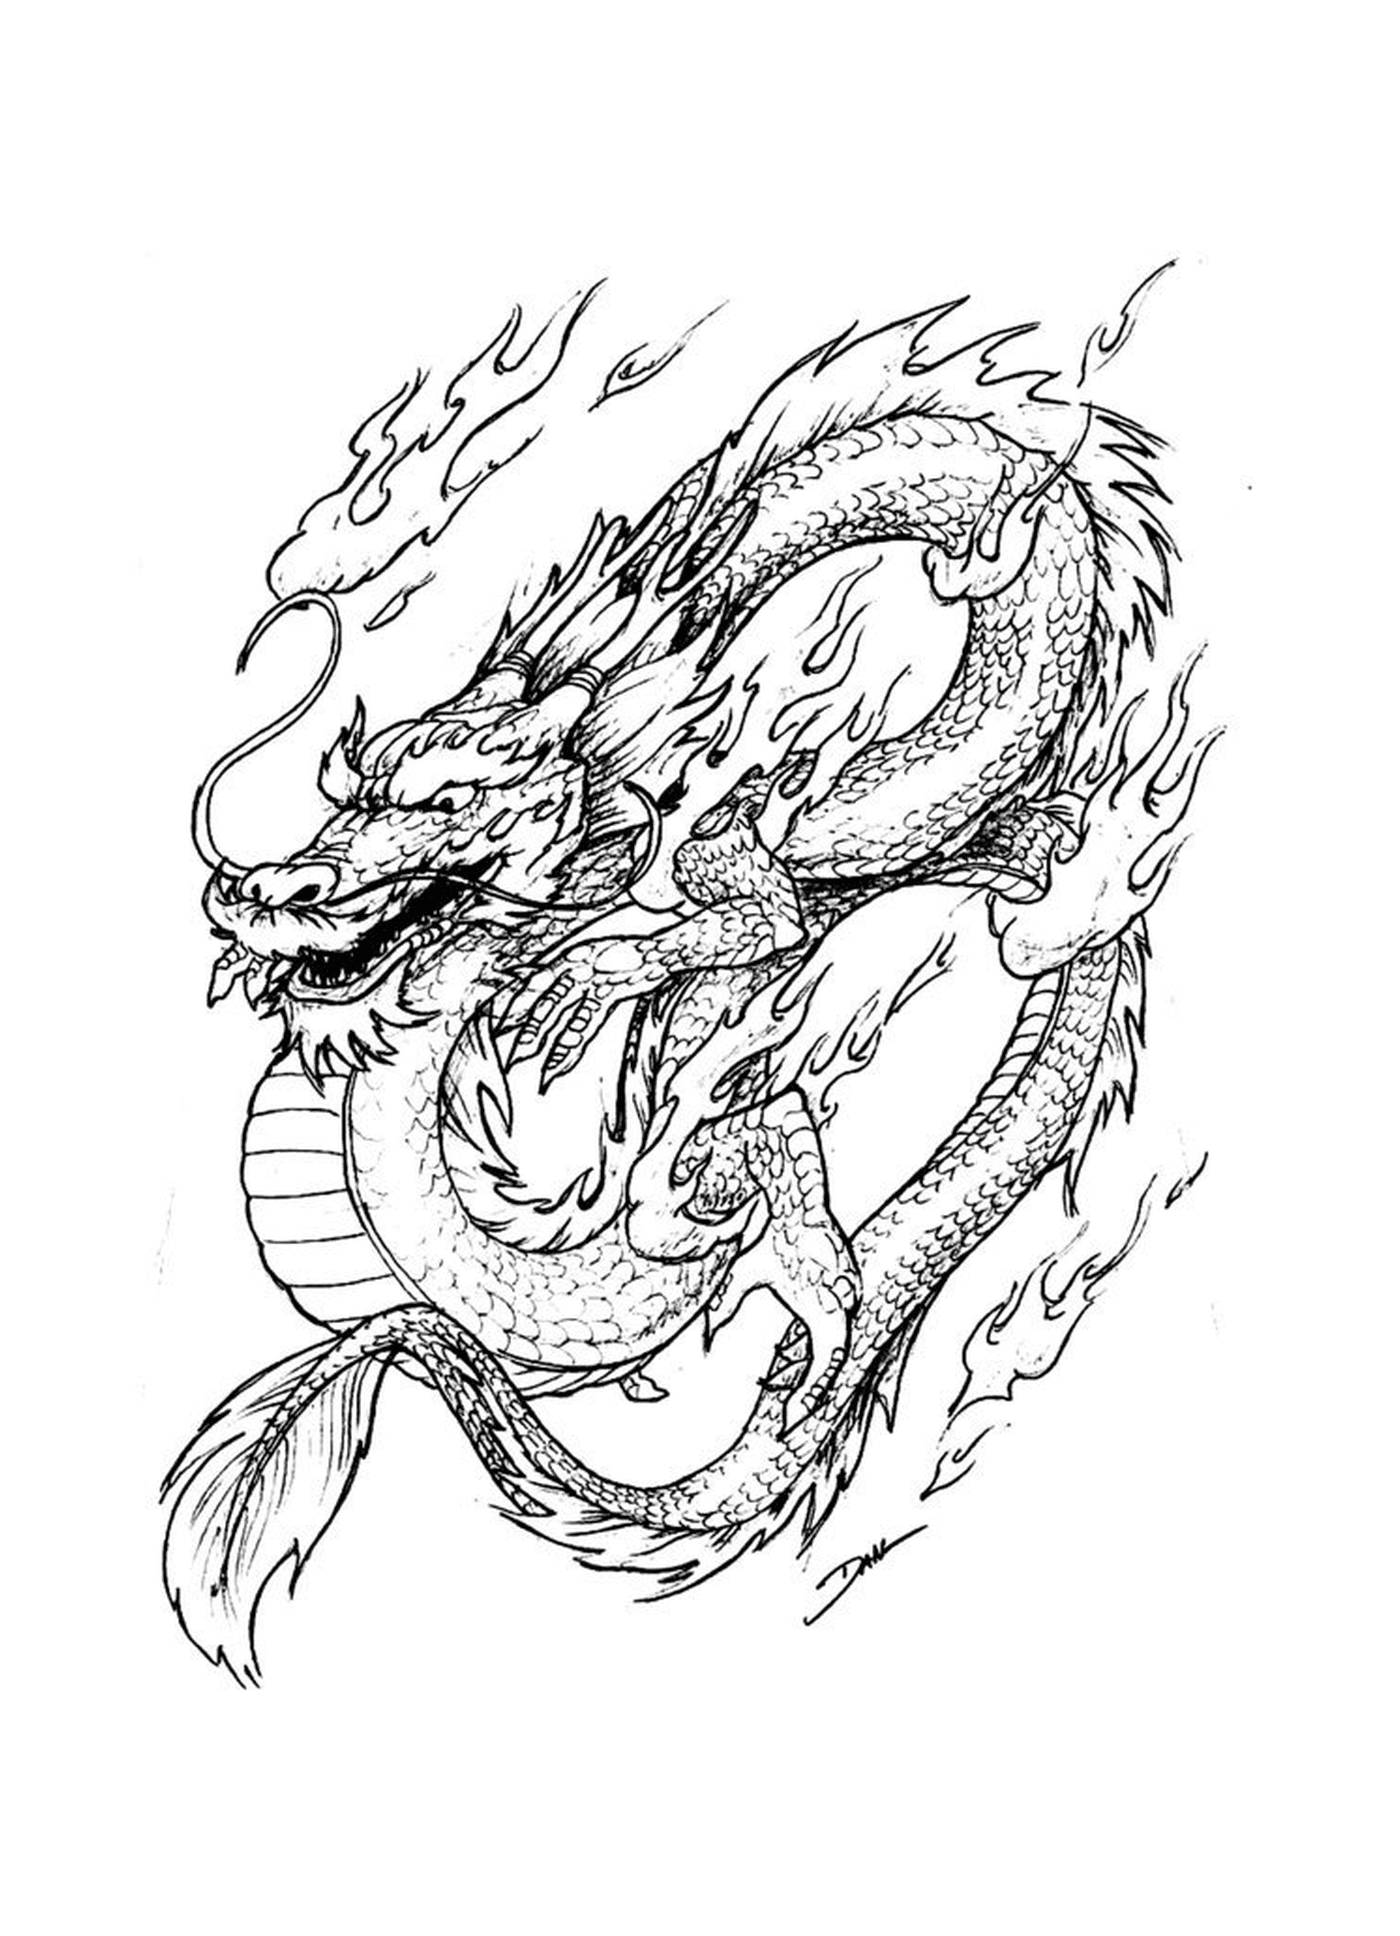  Un drago orientale infiammato, simbolo di forza e passione 